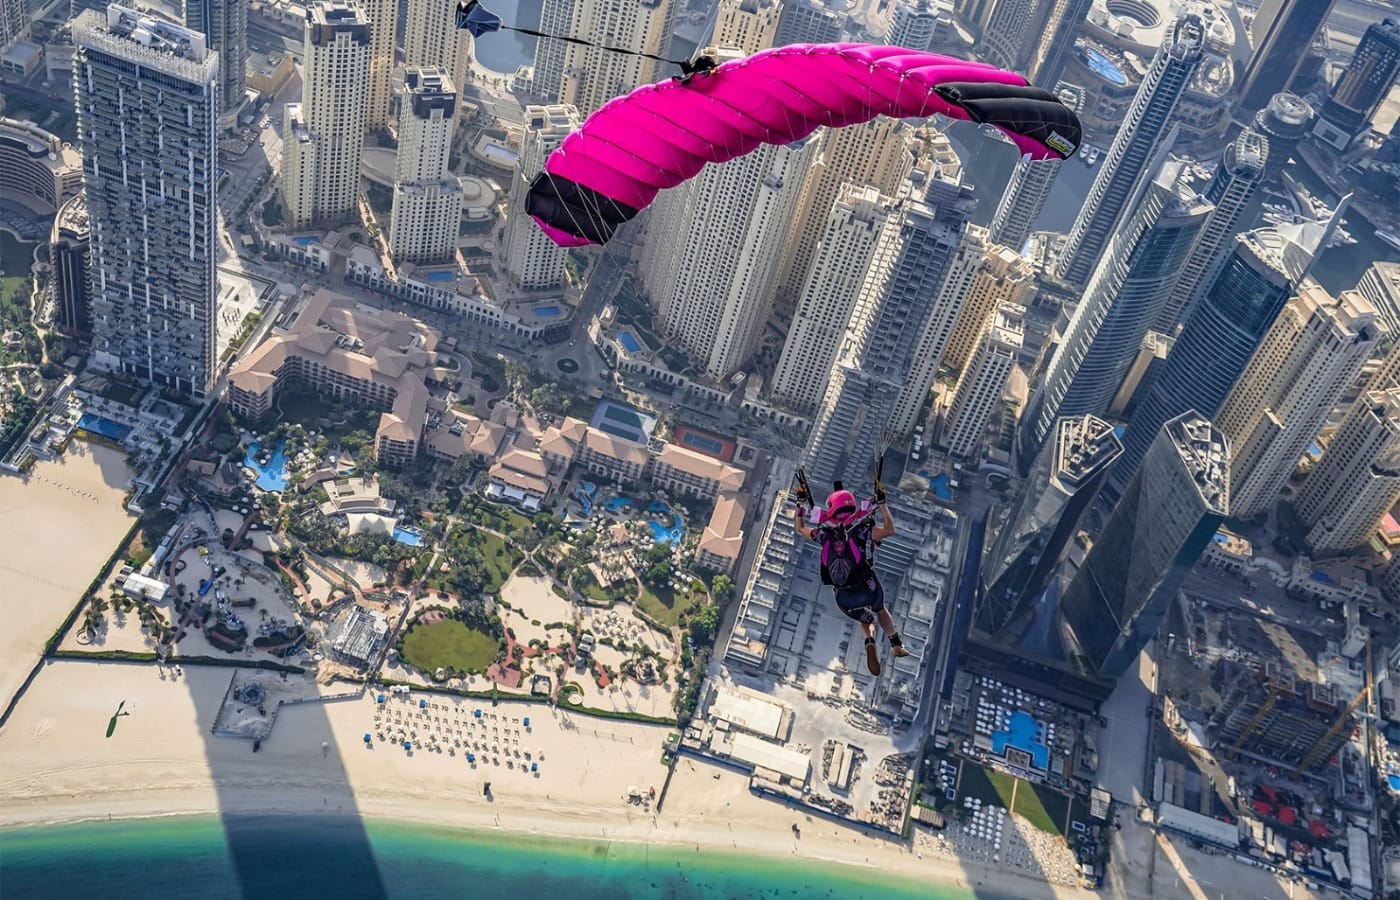 Прыжок с парашютом в Дубае - Скайдайвинг Дубай Марина